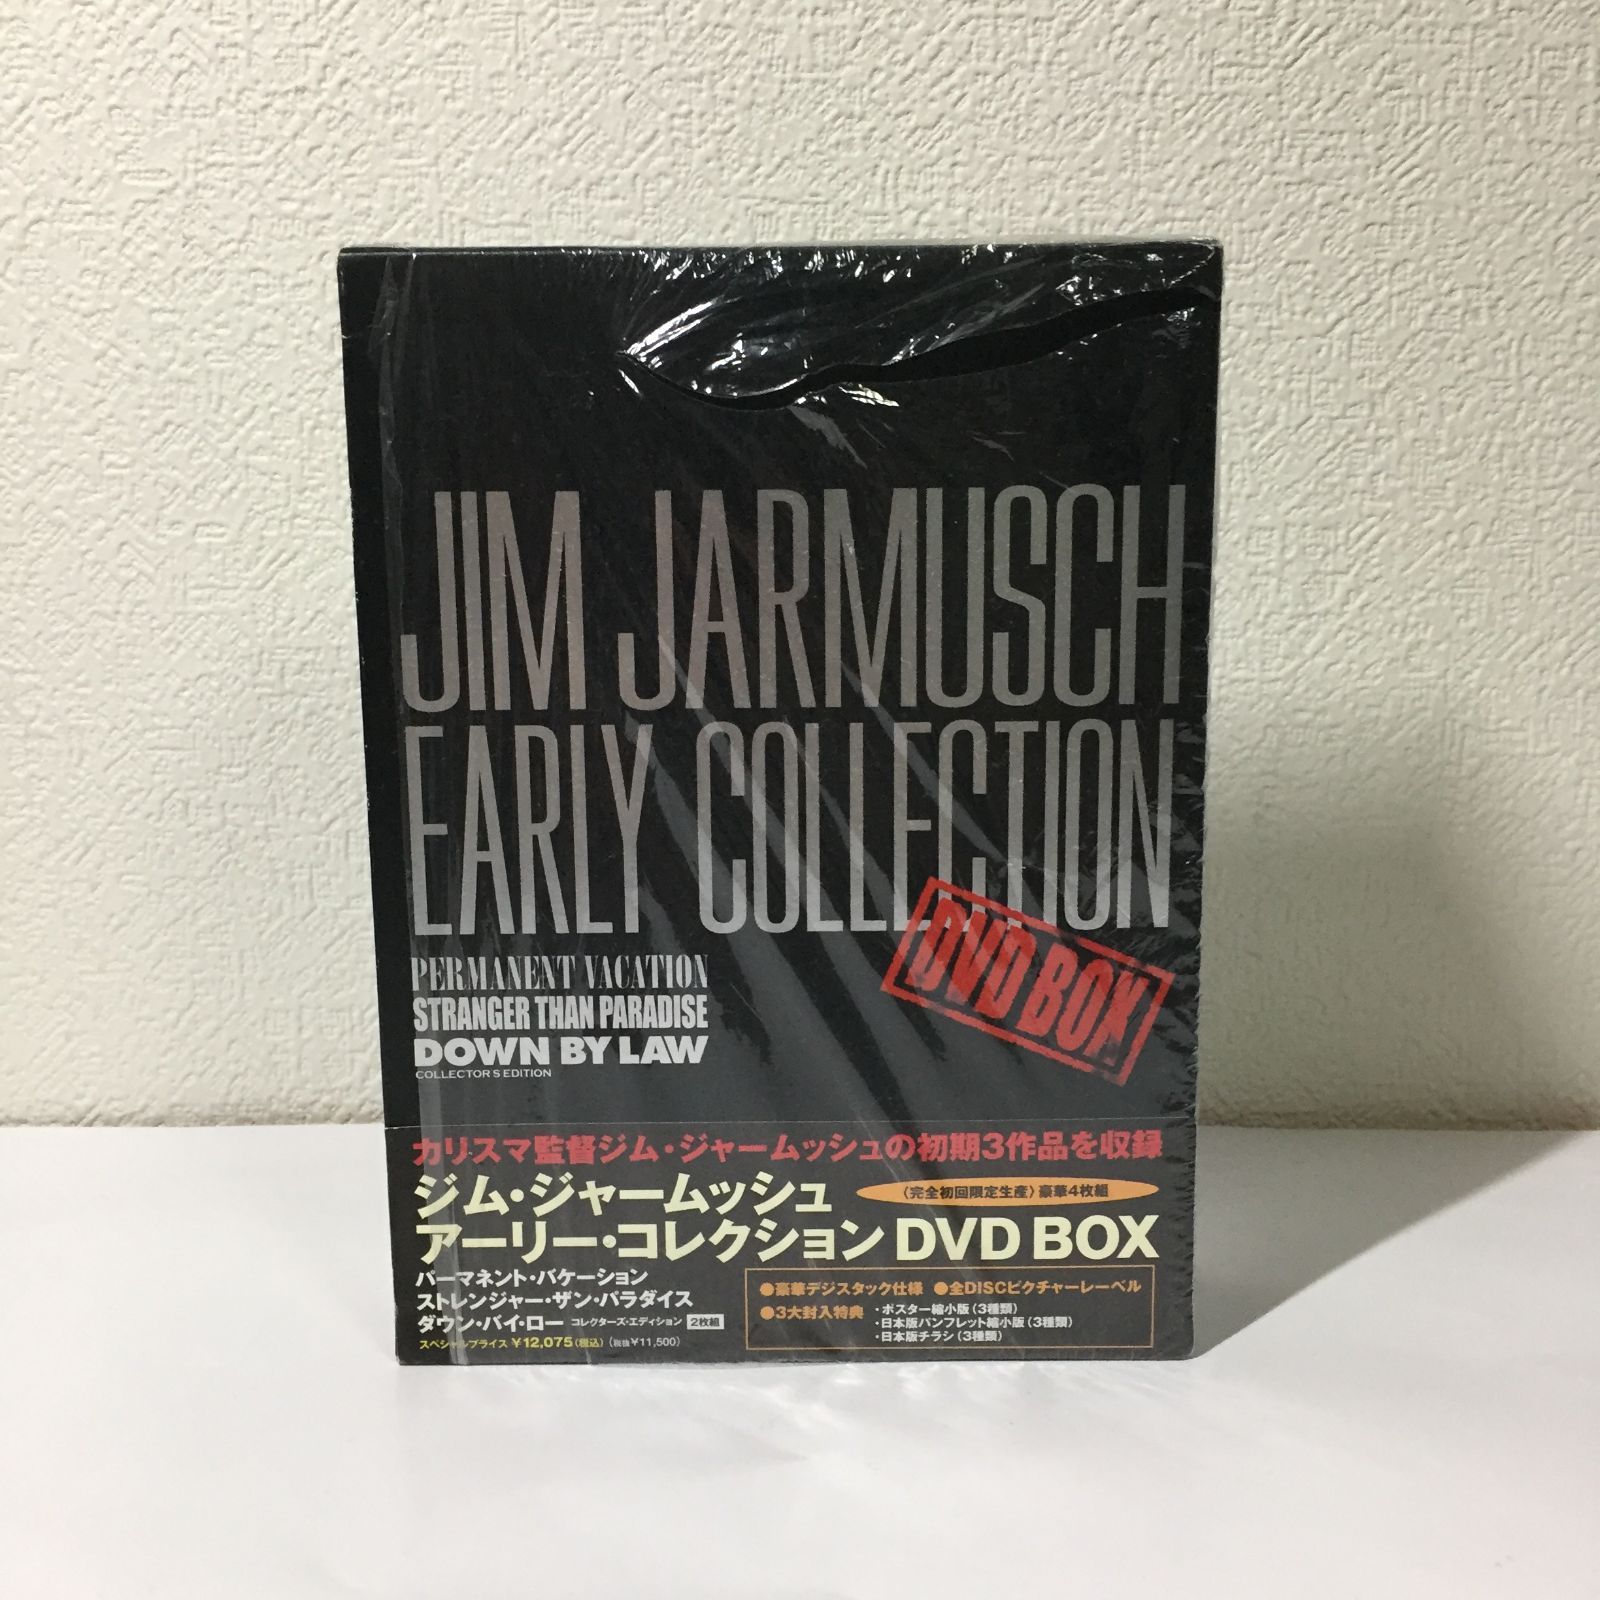 ジム・ジャームッシュ アーリー・コレクション DVD BOX 完全初回限定盤 